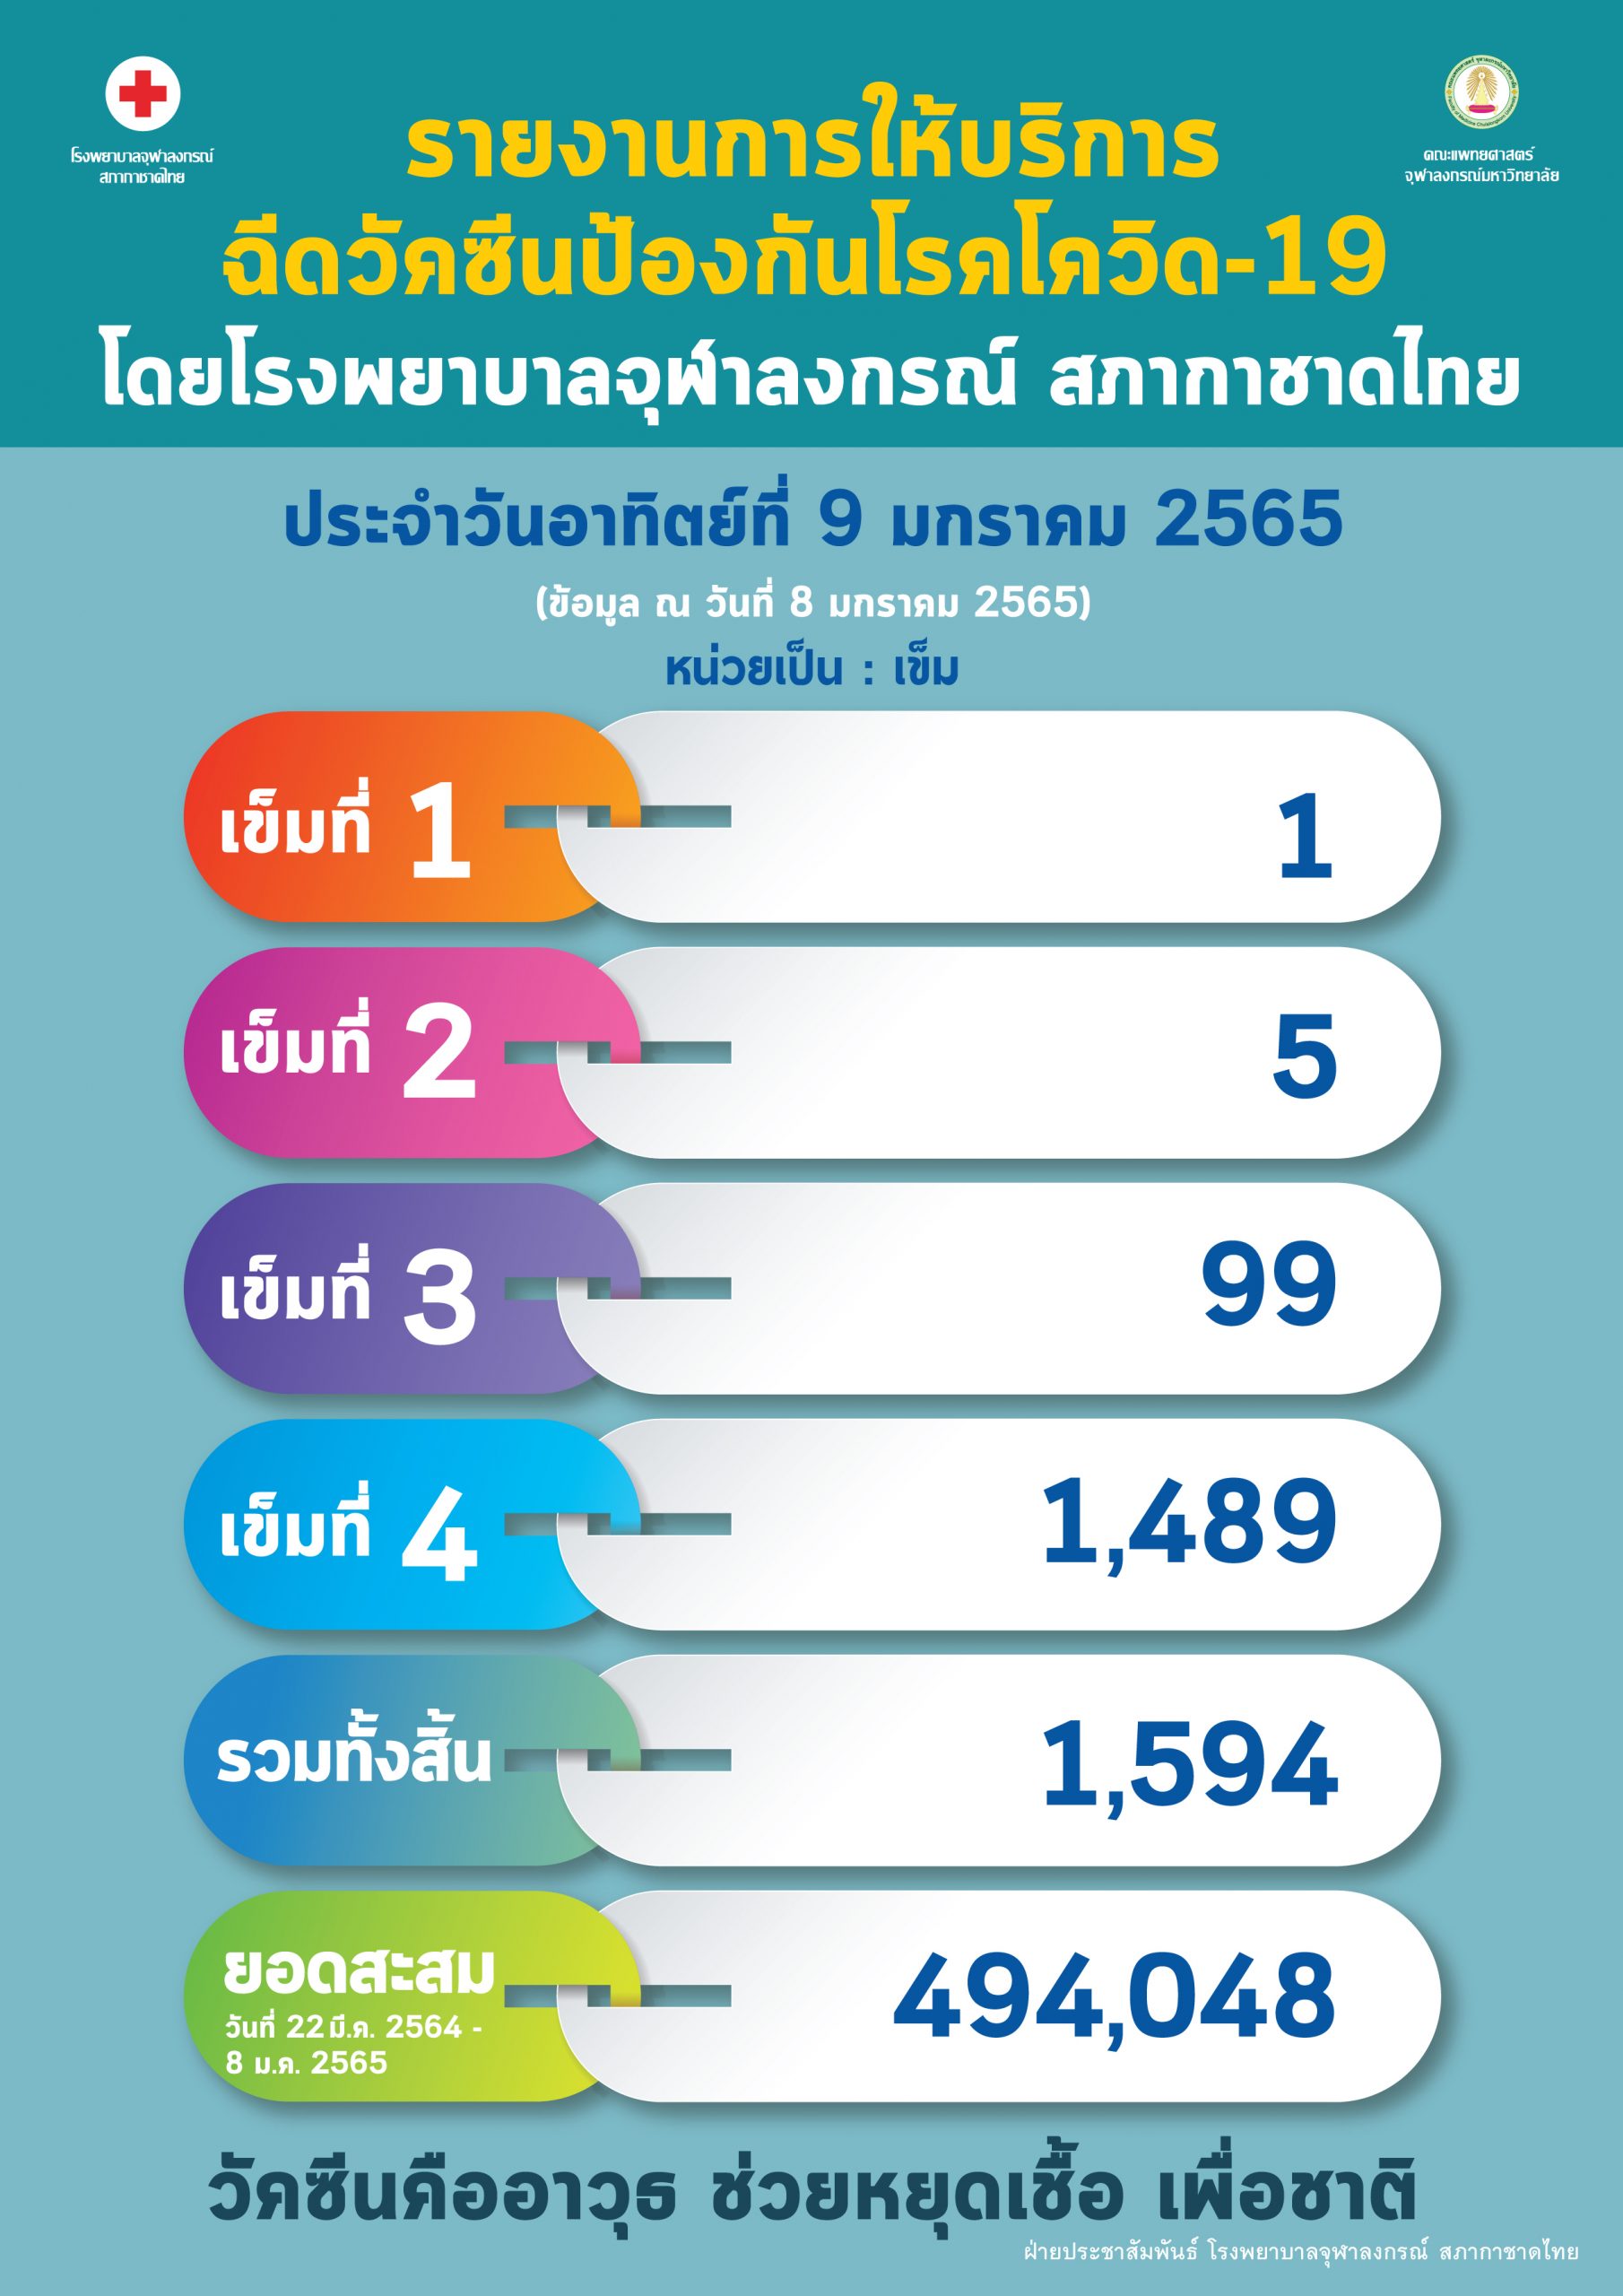 รายงานการให้บริการฉีดวัคซีนป้องกันโรคโควิด-19 โดยโรงพยาบาลจุฬาลงกรณ์ สภากาชาดไทย ประจำวันอาทิตย์ที่ 9 มกราคม 2565